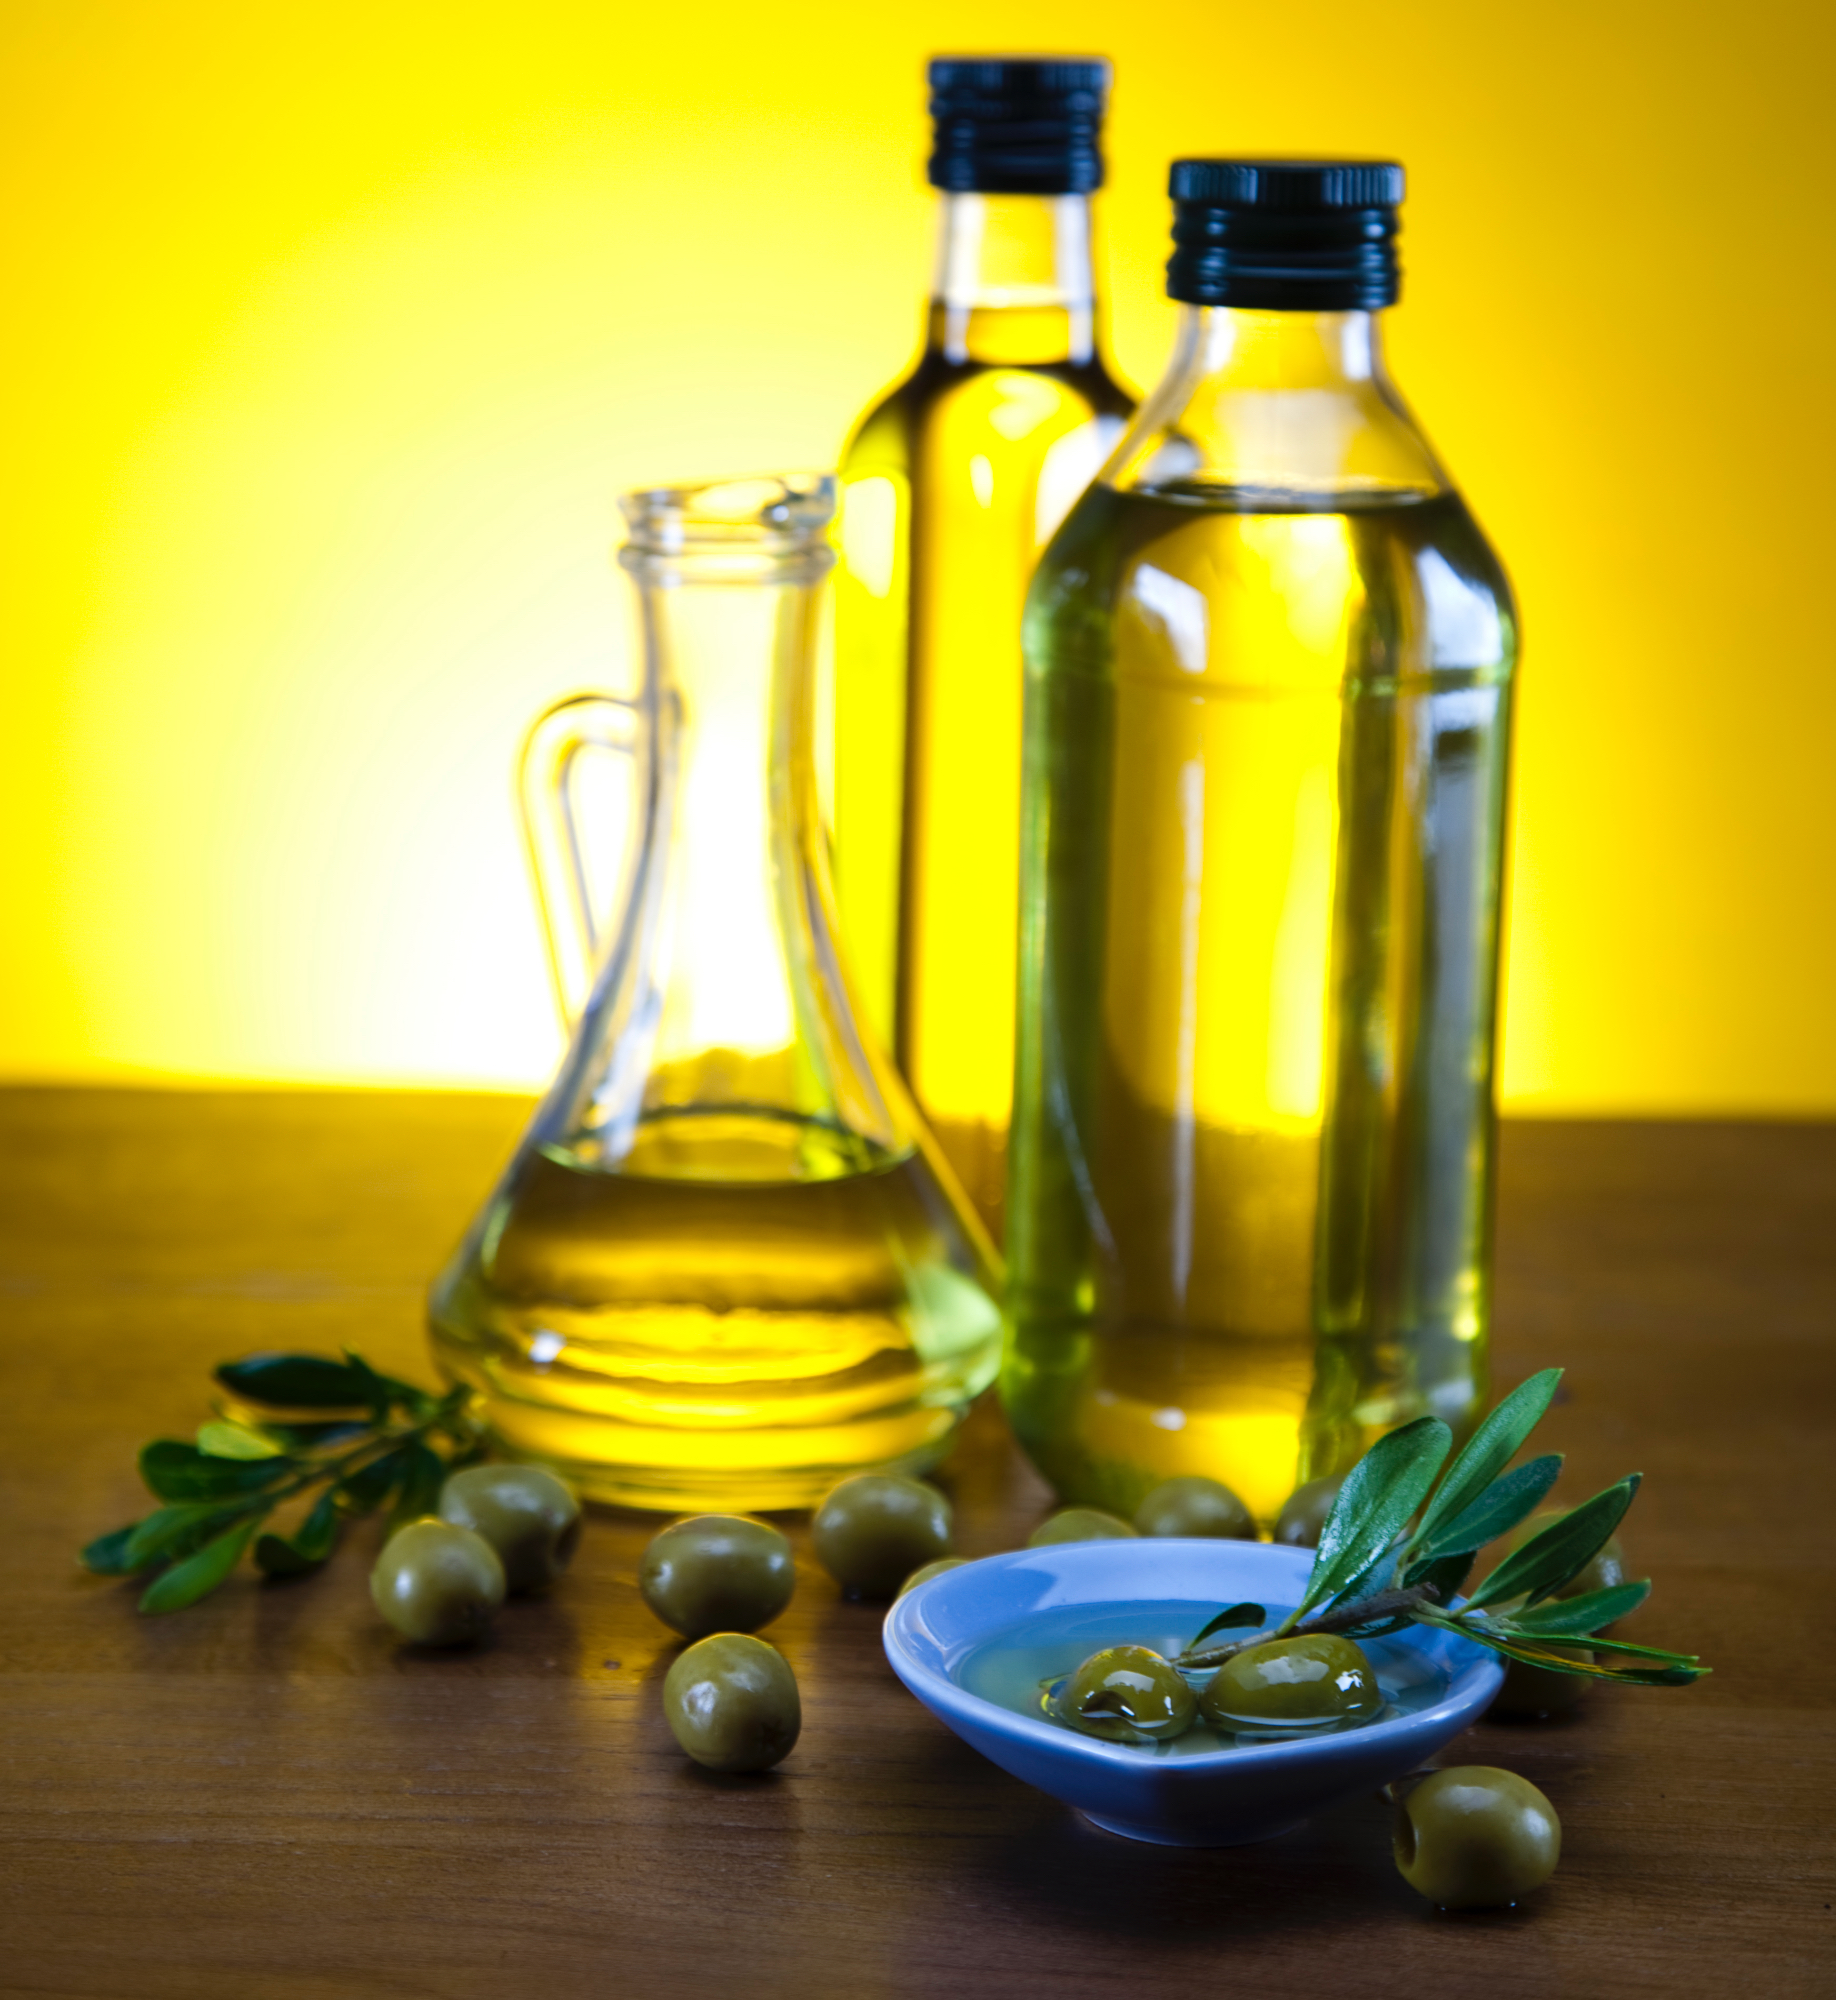 Oljčno olje lahko precej izboljša hrano